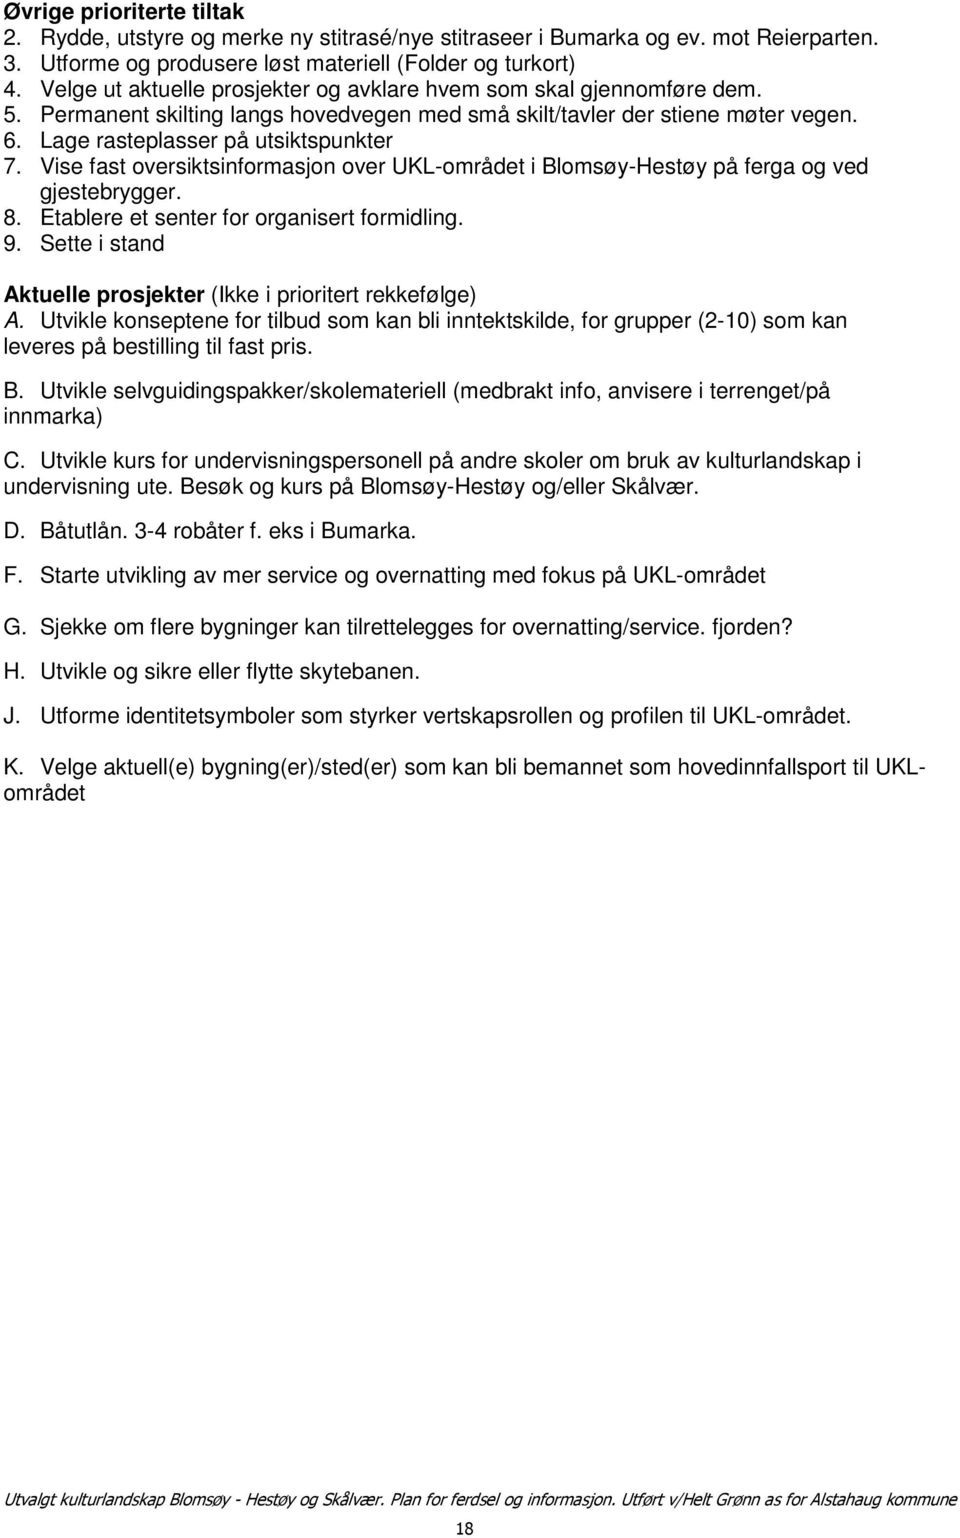 Vise fast oversiktsinformasjon over UKL-området i Blomsøy-Hestøy på ferga og ved gjestebrygger. 8. Etablere et senter for organisert formidling. 9.